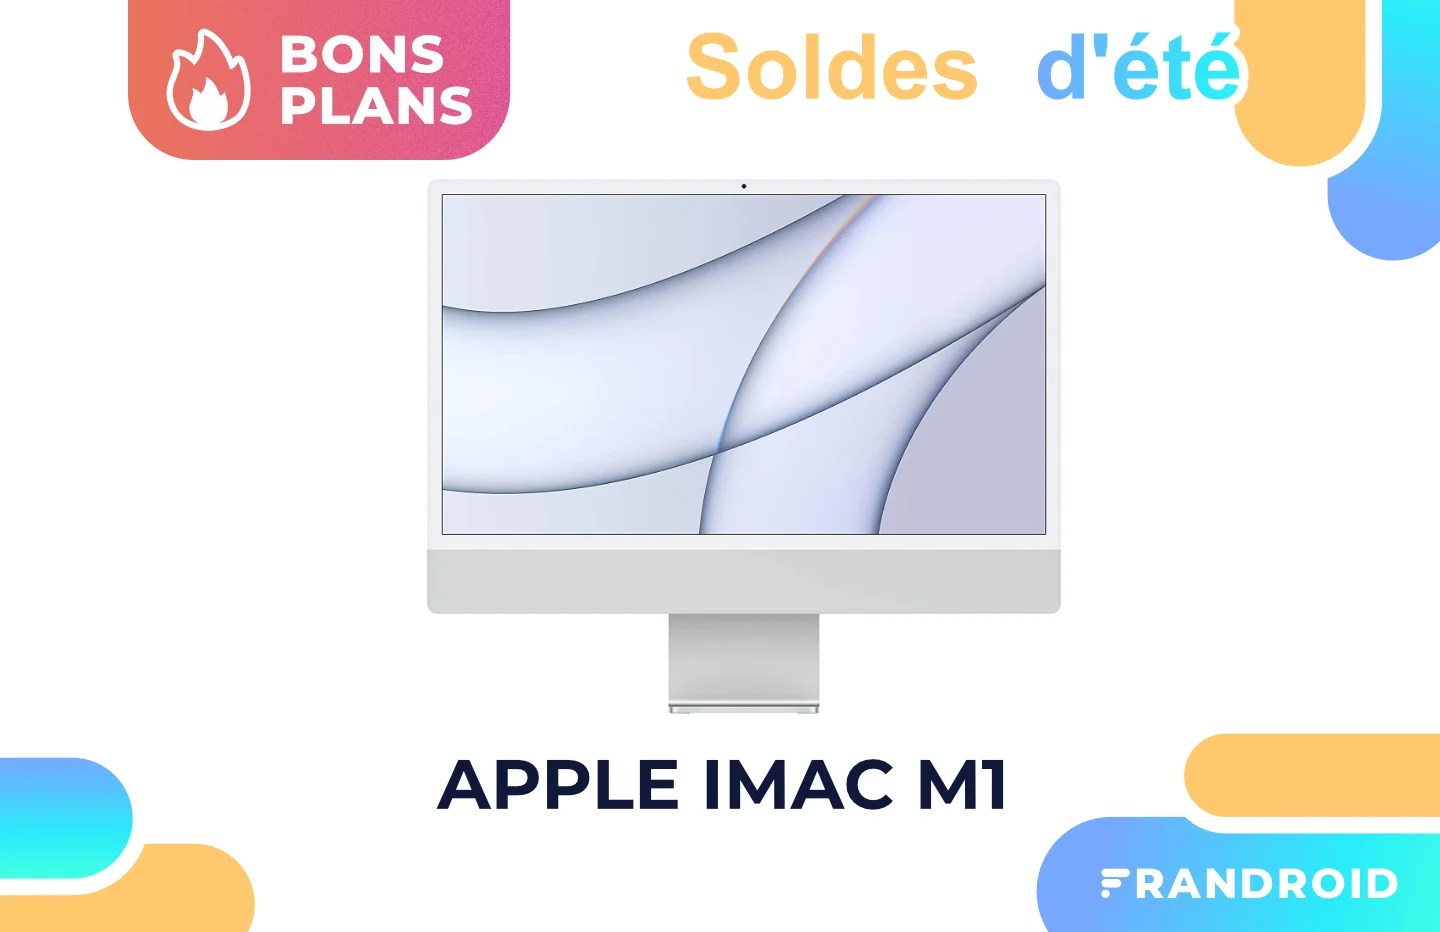 Le nouvel iMac M1 est moins cher à l’occasion des soldes d’été sur Amazon